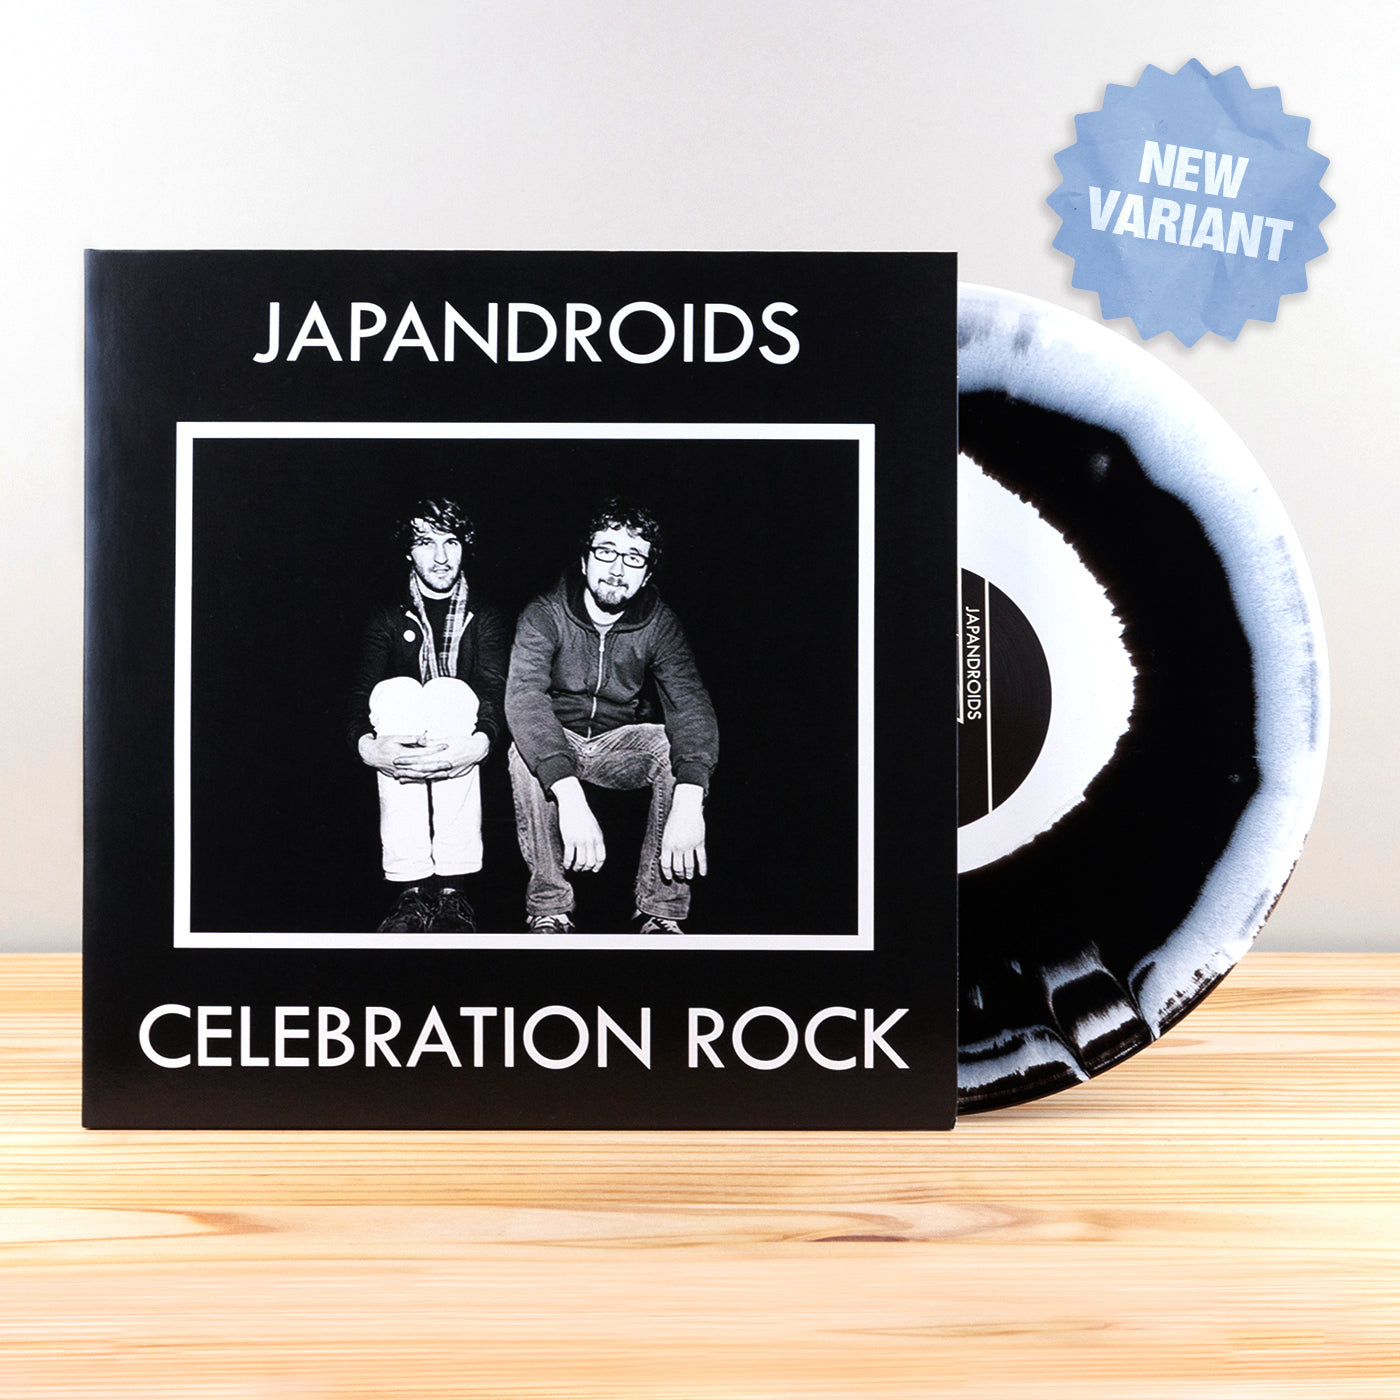 Japandroids - Celebration Rock: Limited Edition Black + White Mix Vinyl LP